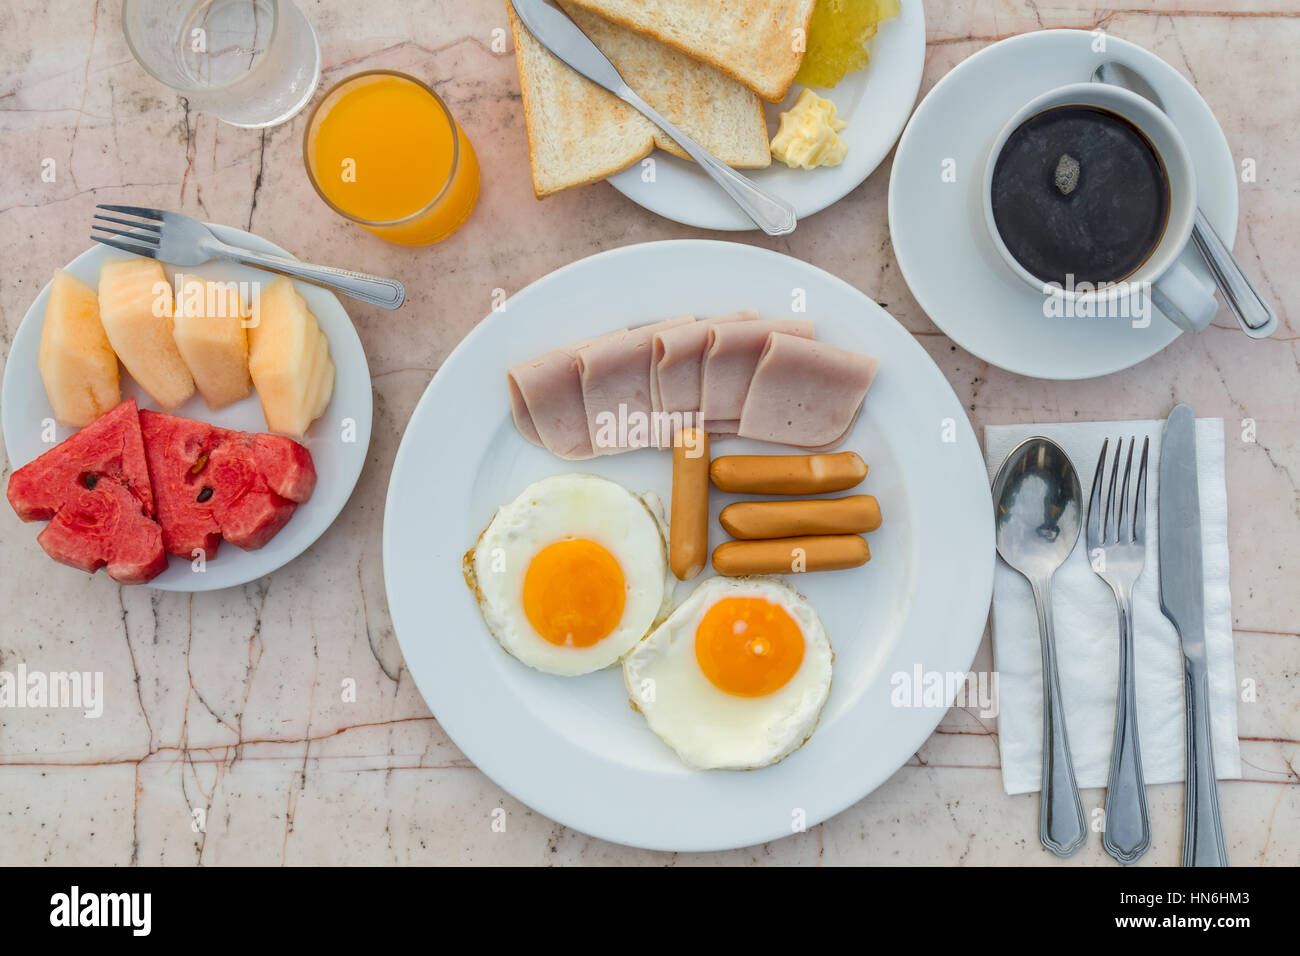 Le petit-déjeuner avec des oeufs frits, jambon, saucisses, pain grillé, de confiture, de beurre, de pastèque, jus d'orange et du café noir sur la table de marbre. vue d'en haut. Banque D'Images